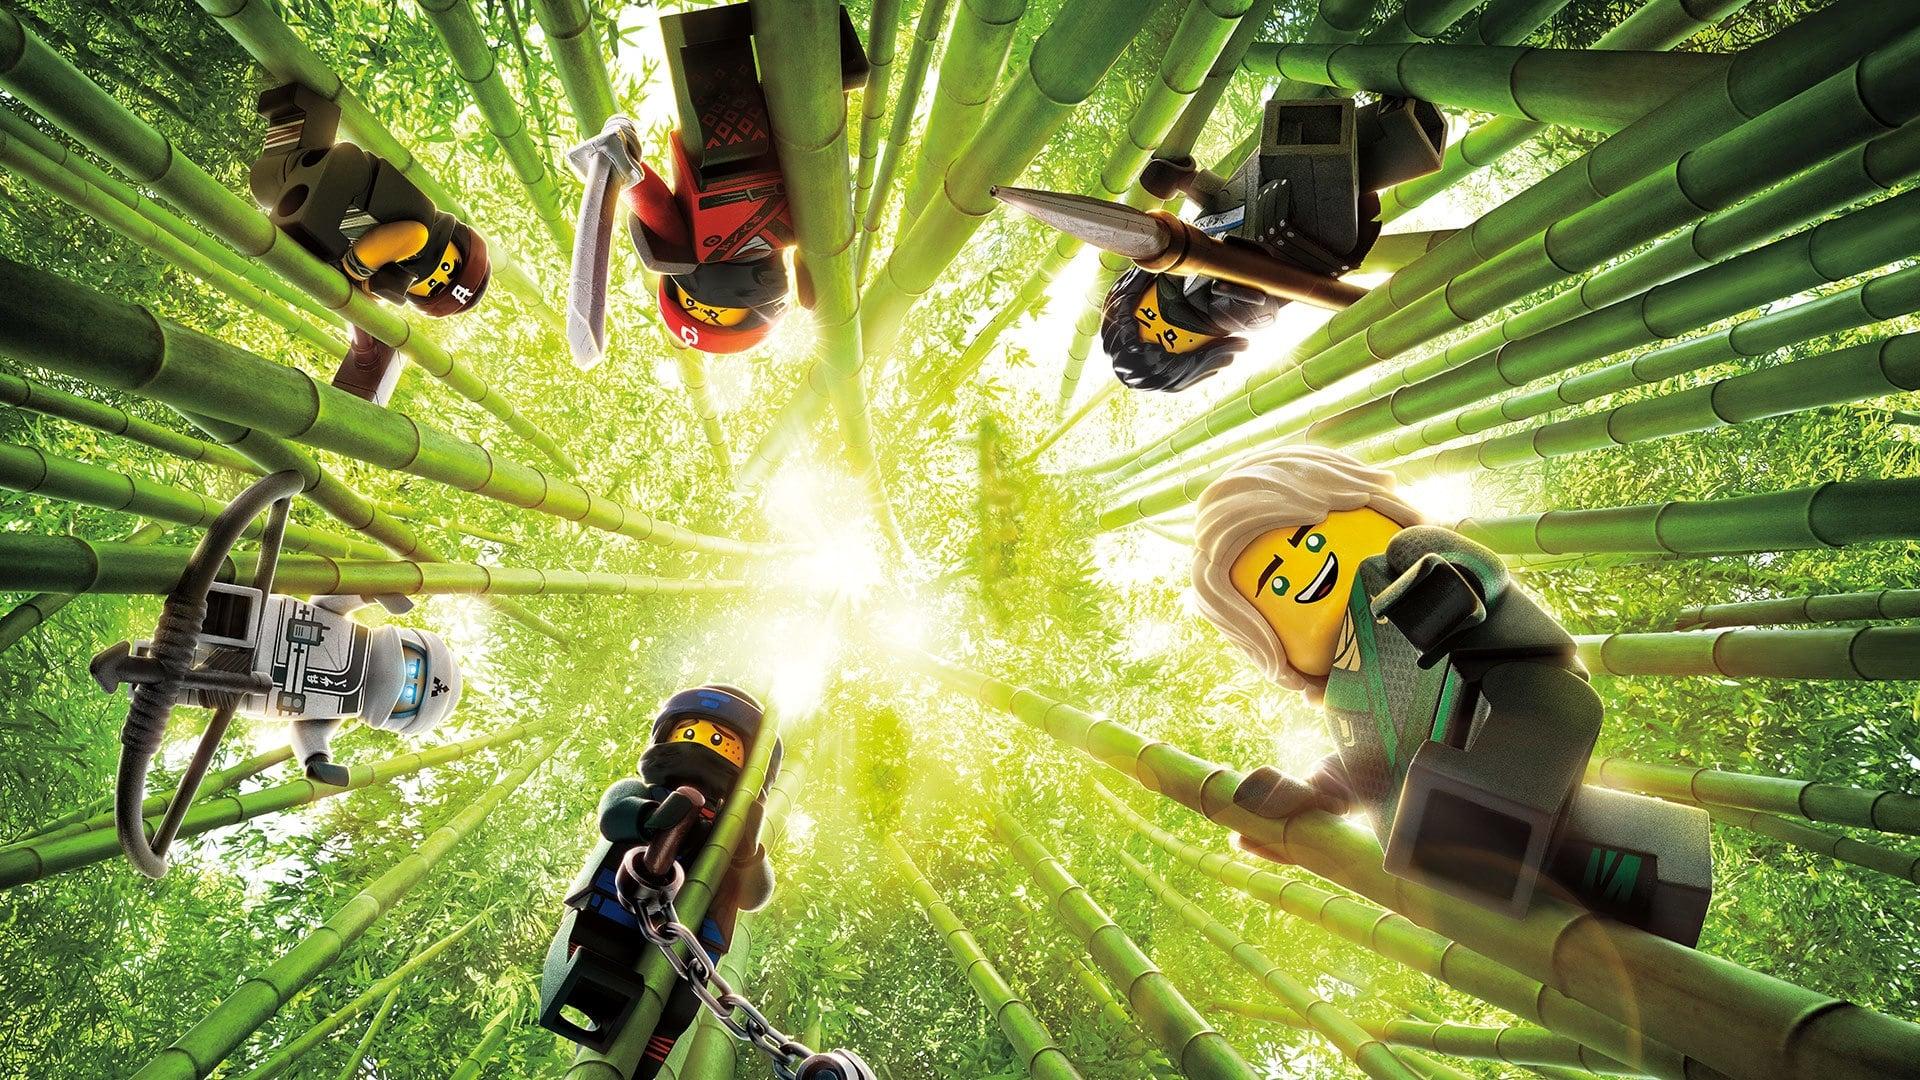 The Lego Ninjago Movie backdrop